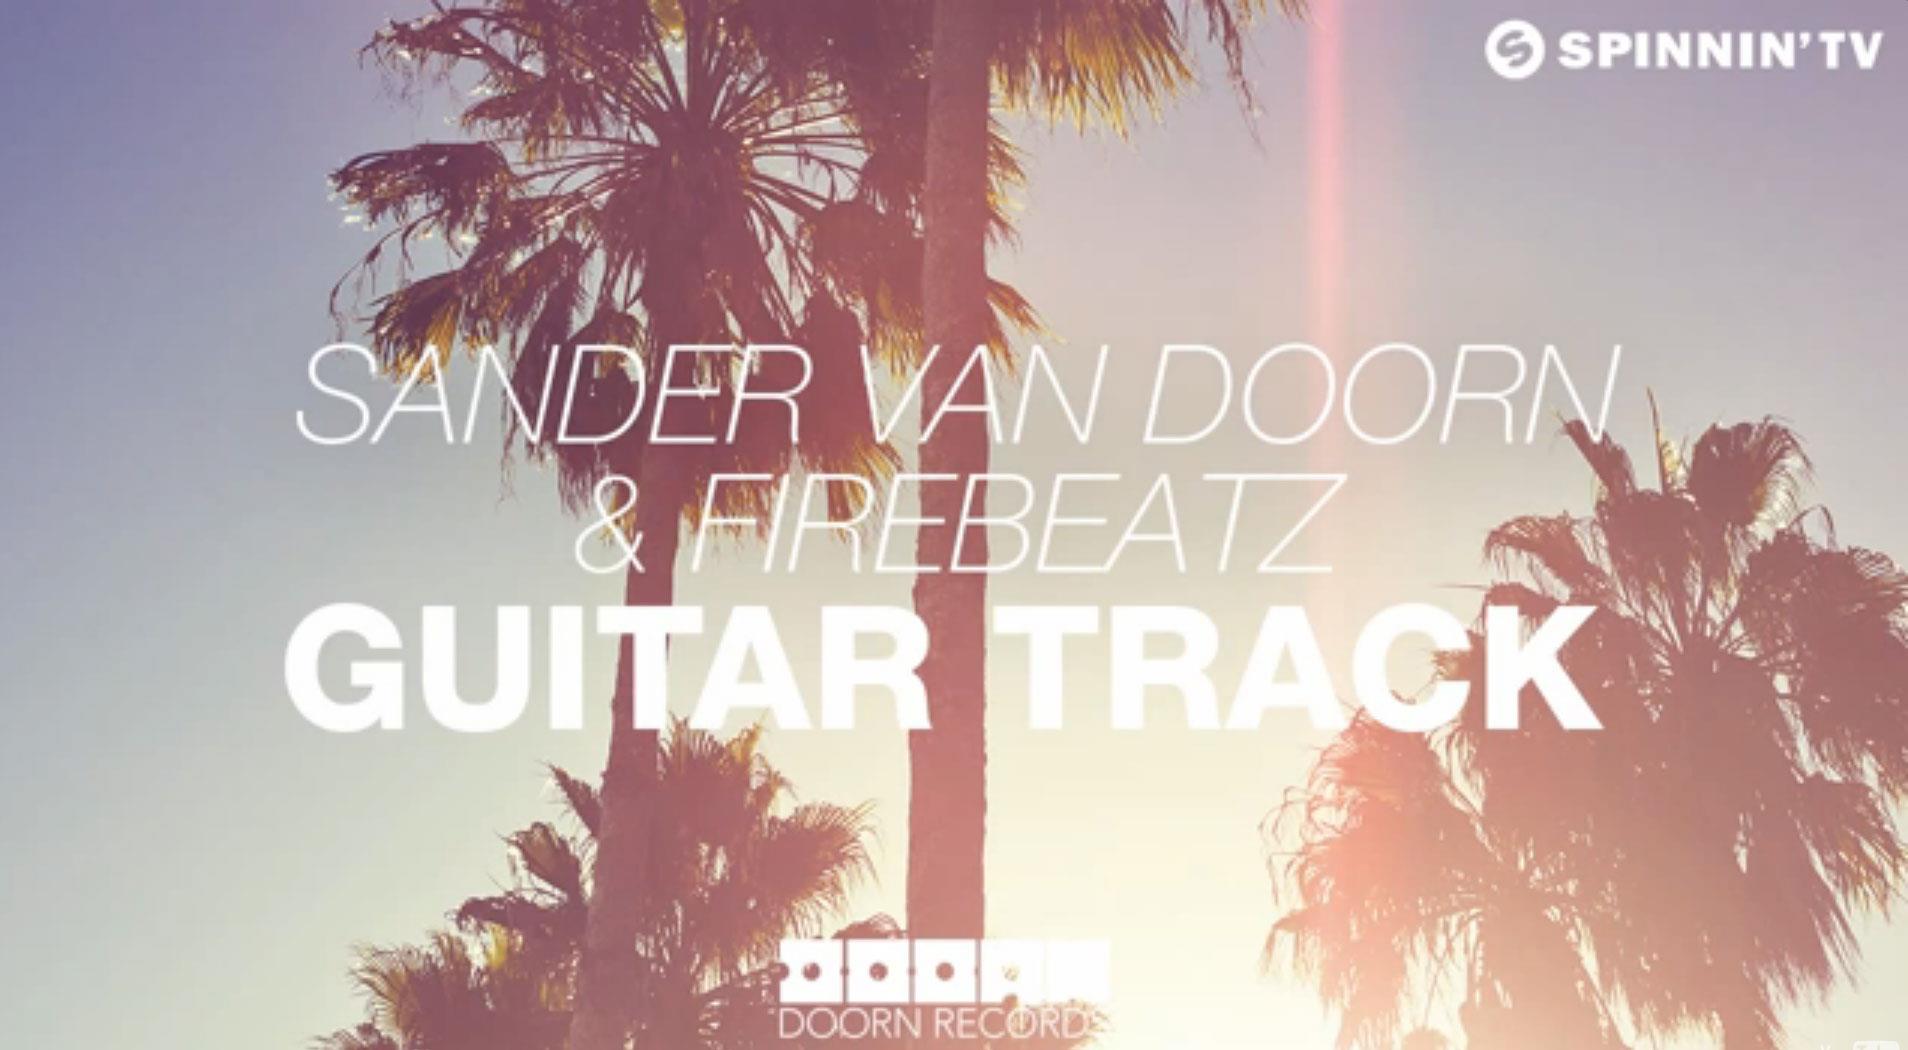 Il video di Sander Van Doorn e Firebeatz Guitar Track